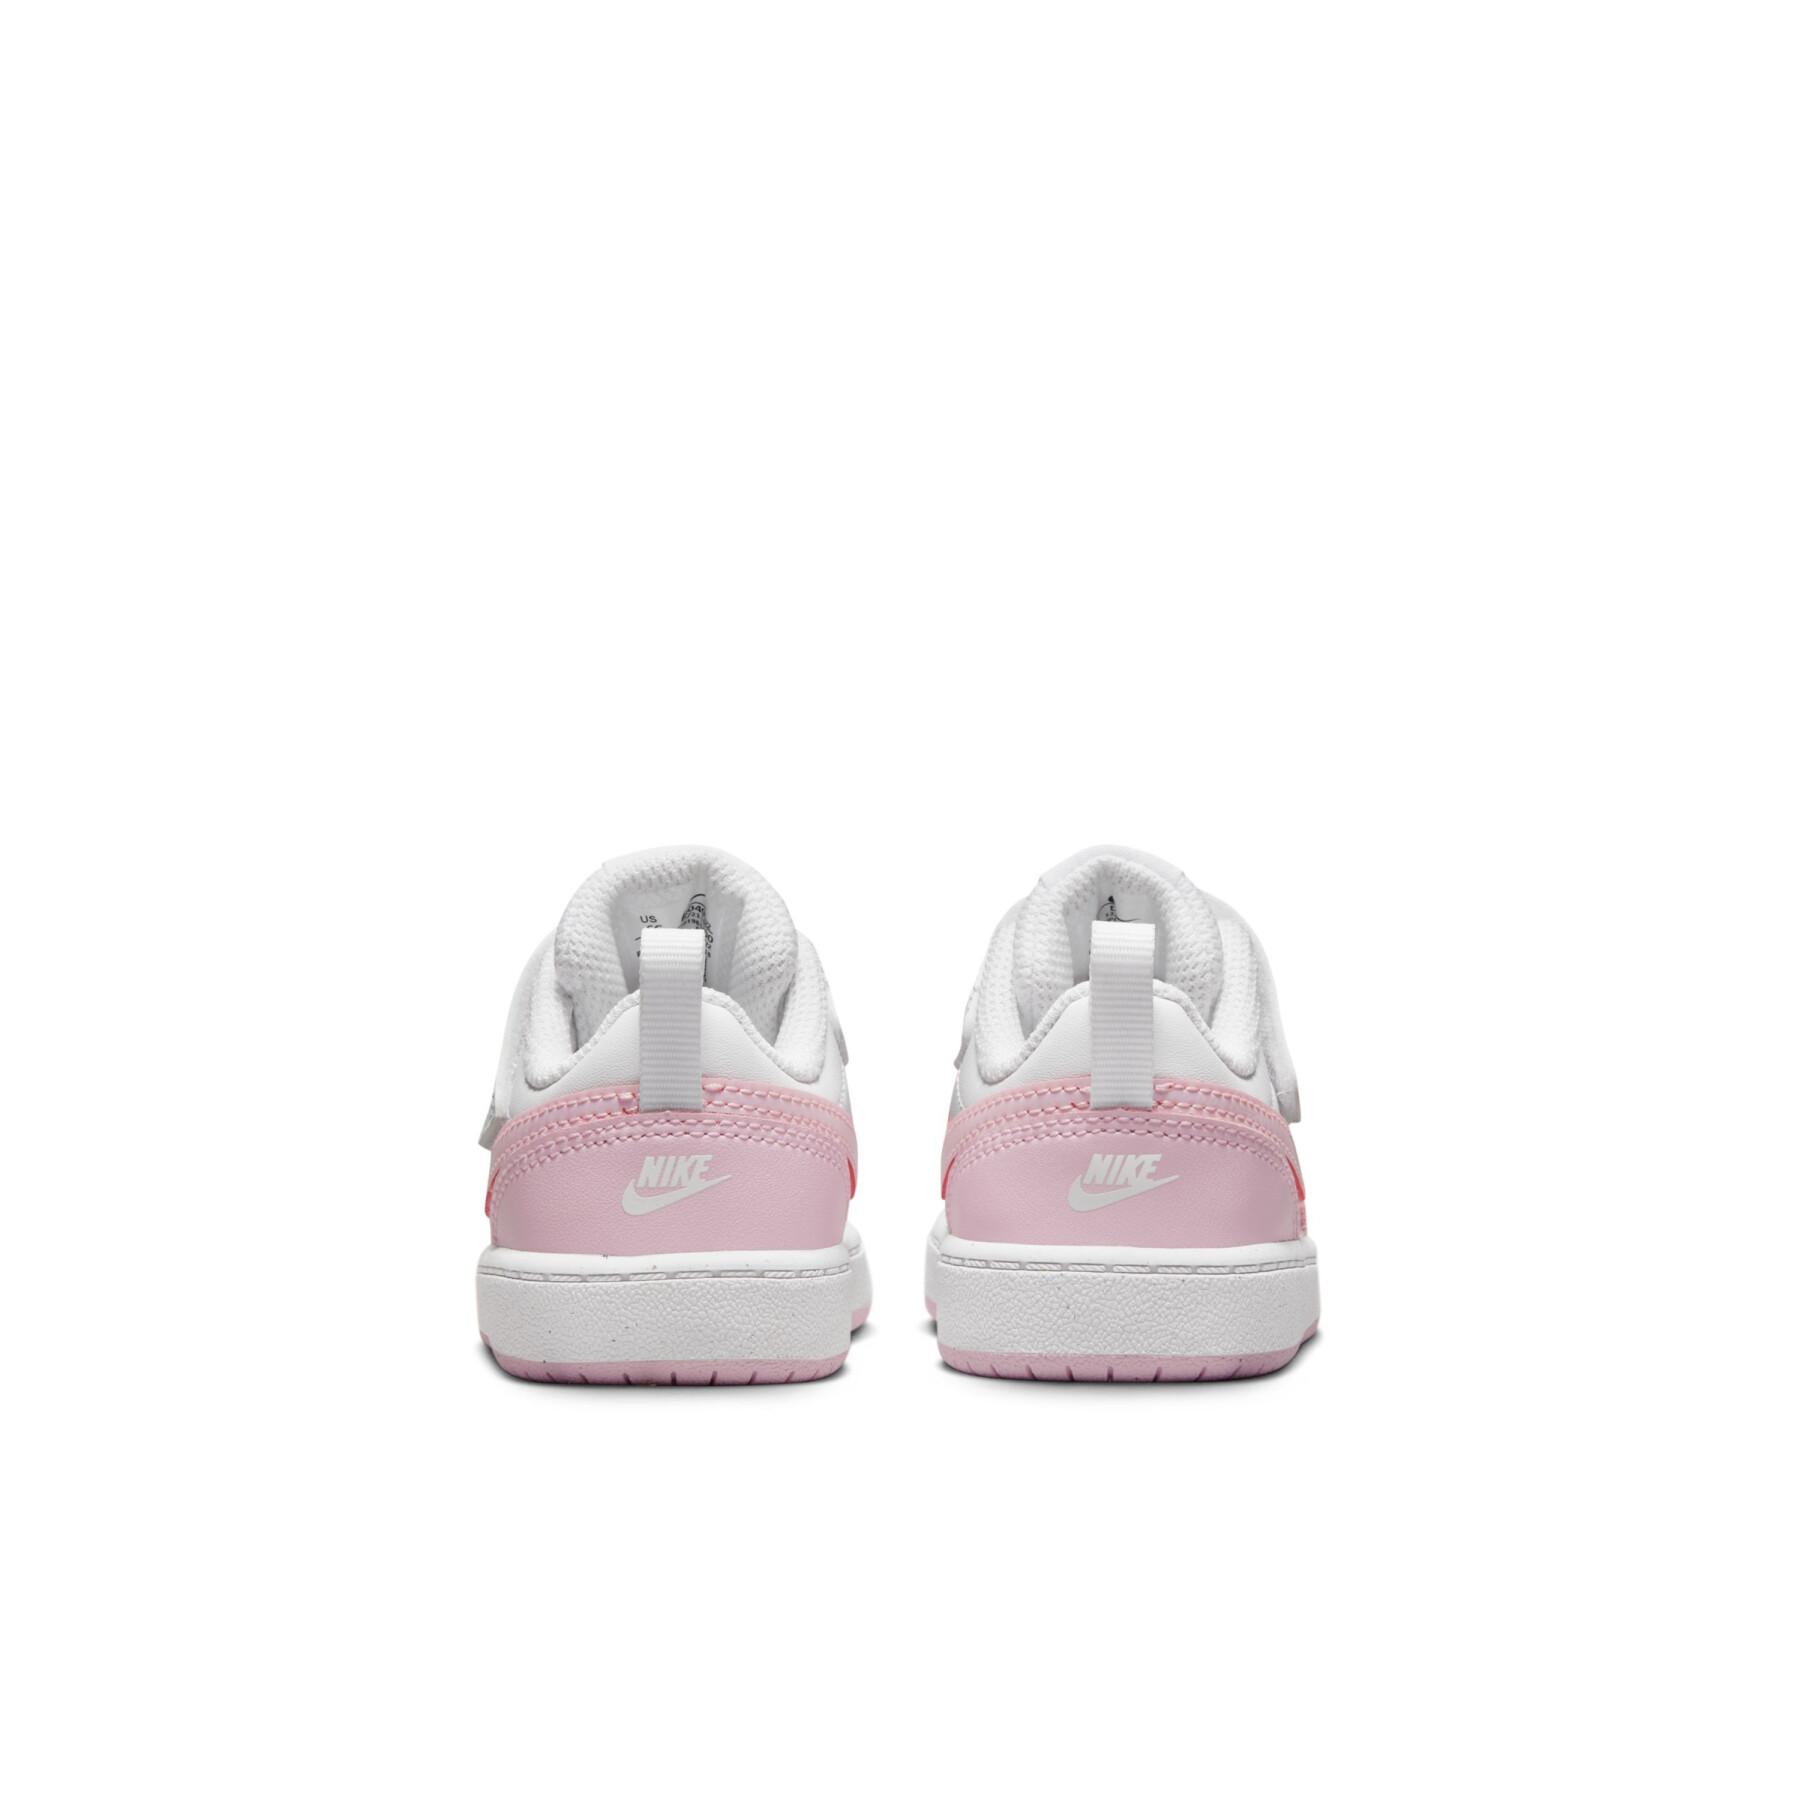 Zapatillas para bebés Nike Court Borough 2 Se